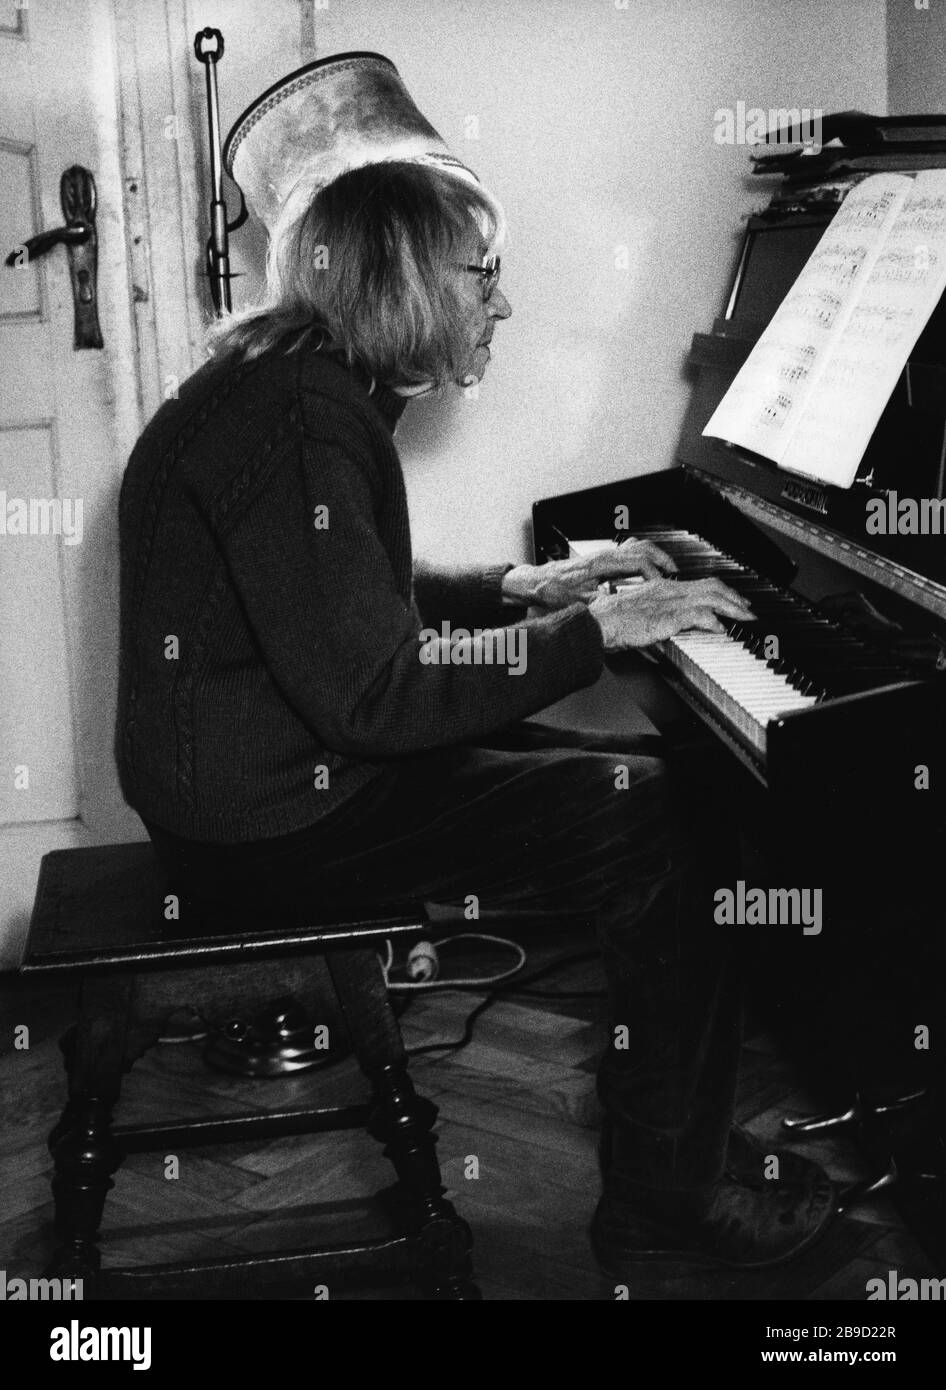 Ein älterer Mann mit langen Haaren spielt Klavier. [Automatisierte  Übersetzung] Stockfotografie - Alamy